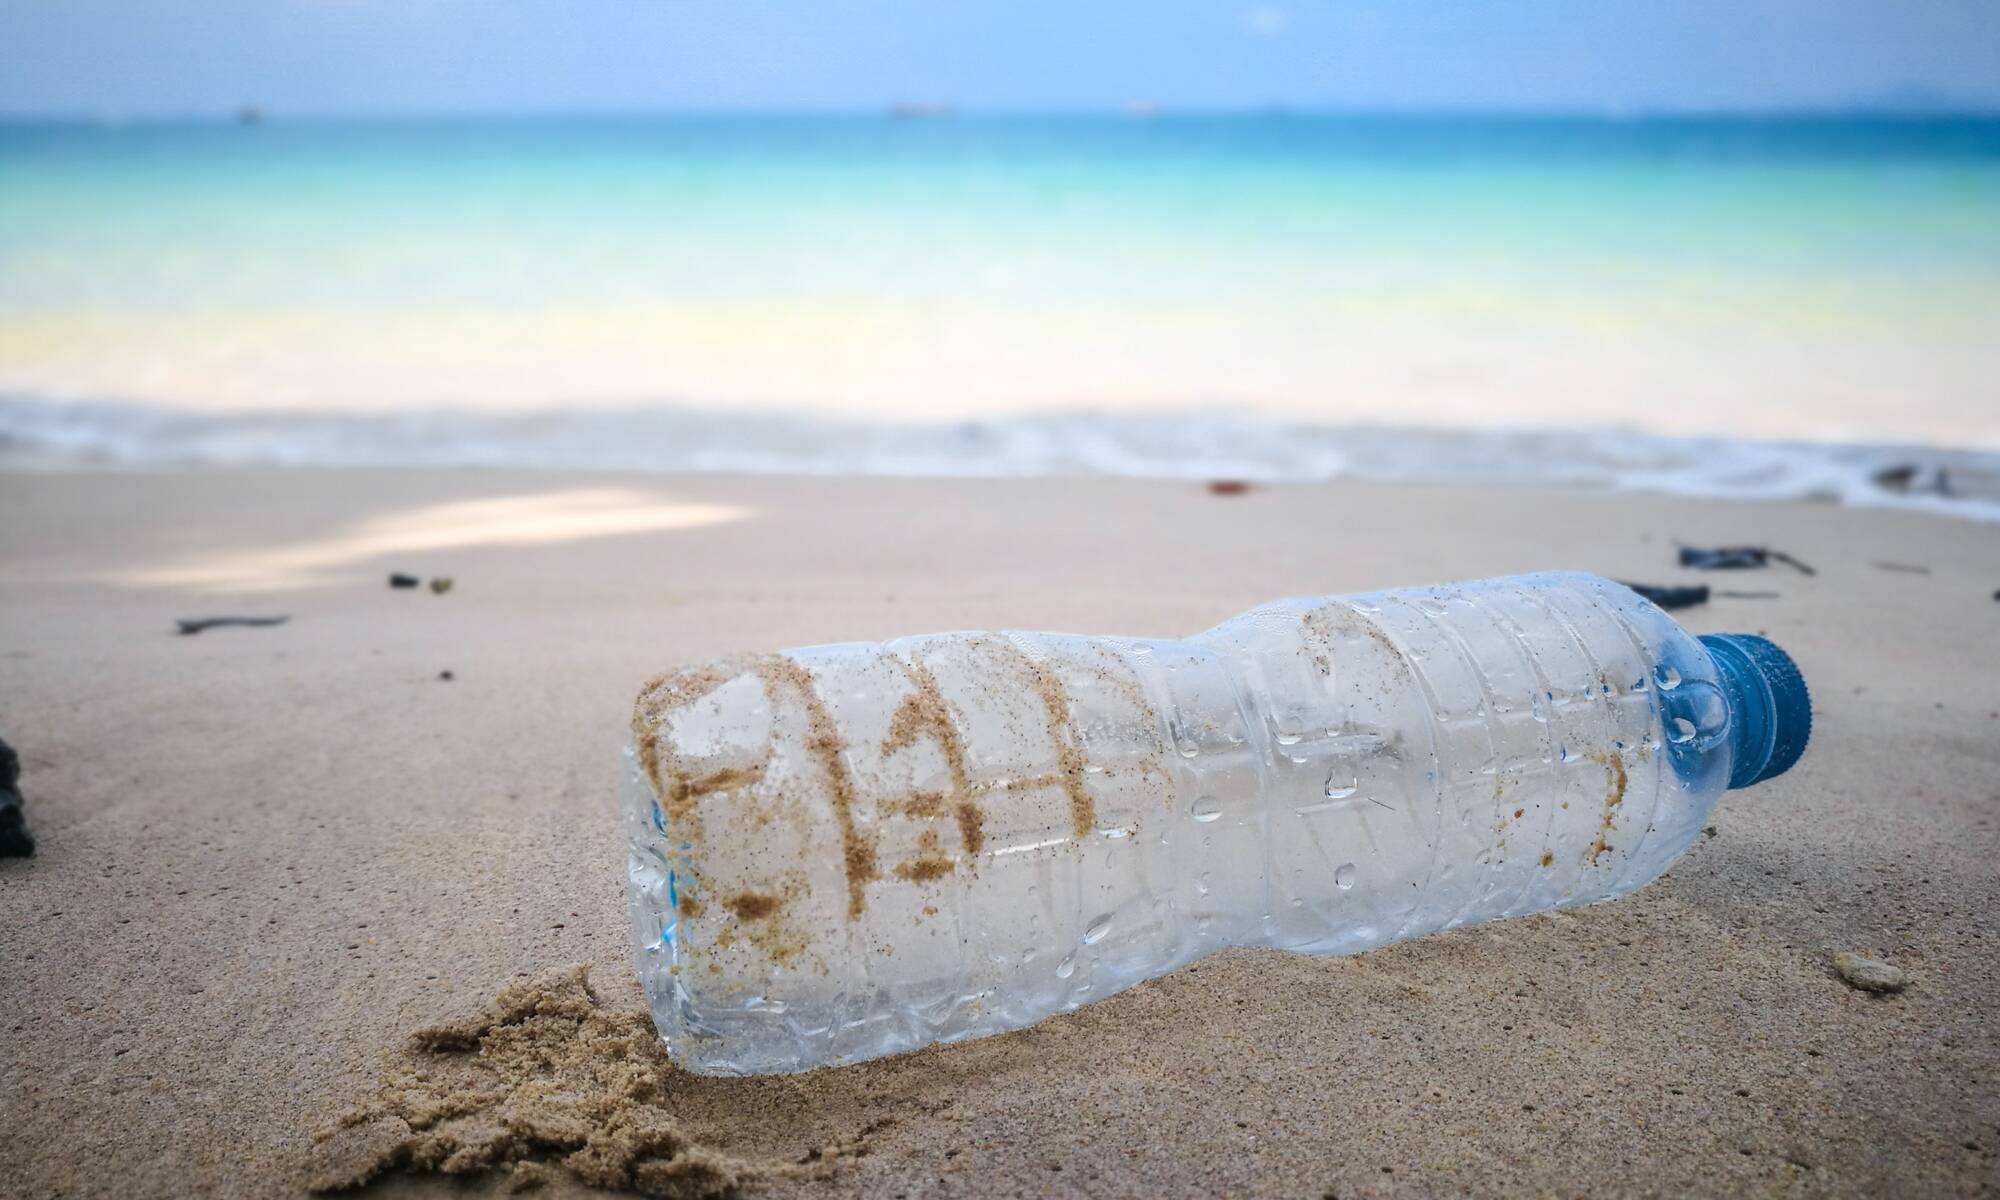 પ્લાસ્ટિક પેકેજિંગ પર્યાવરણને કેવી રીતે અસર કરે છે?